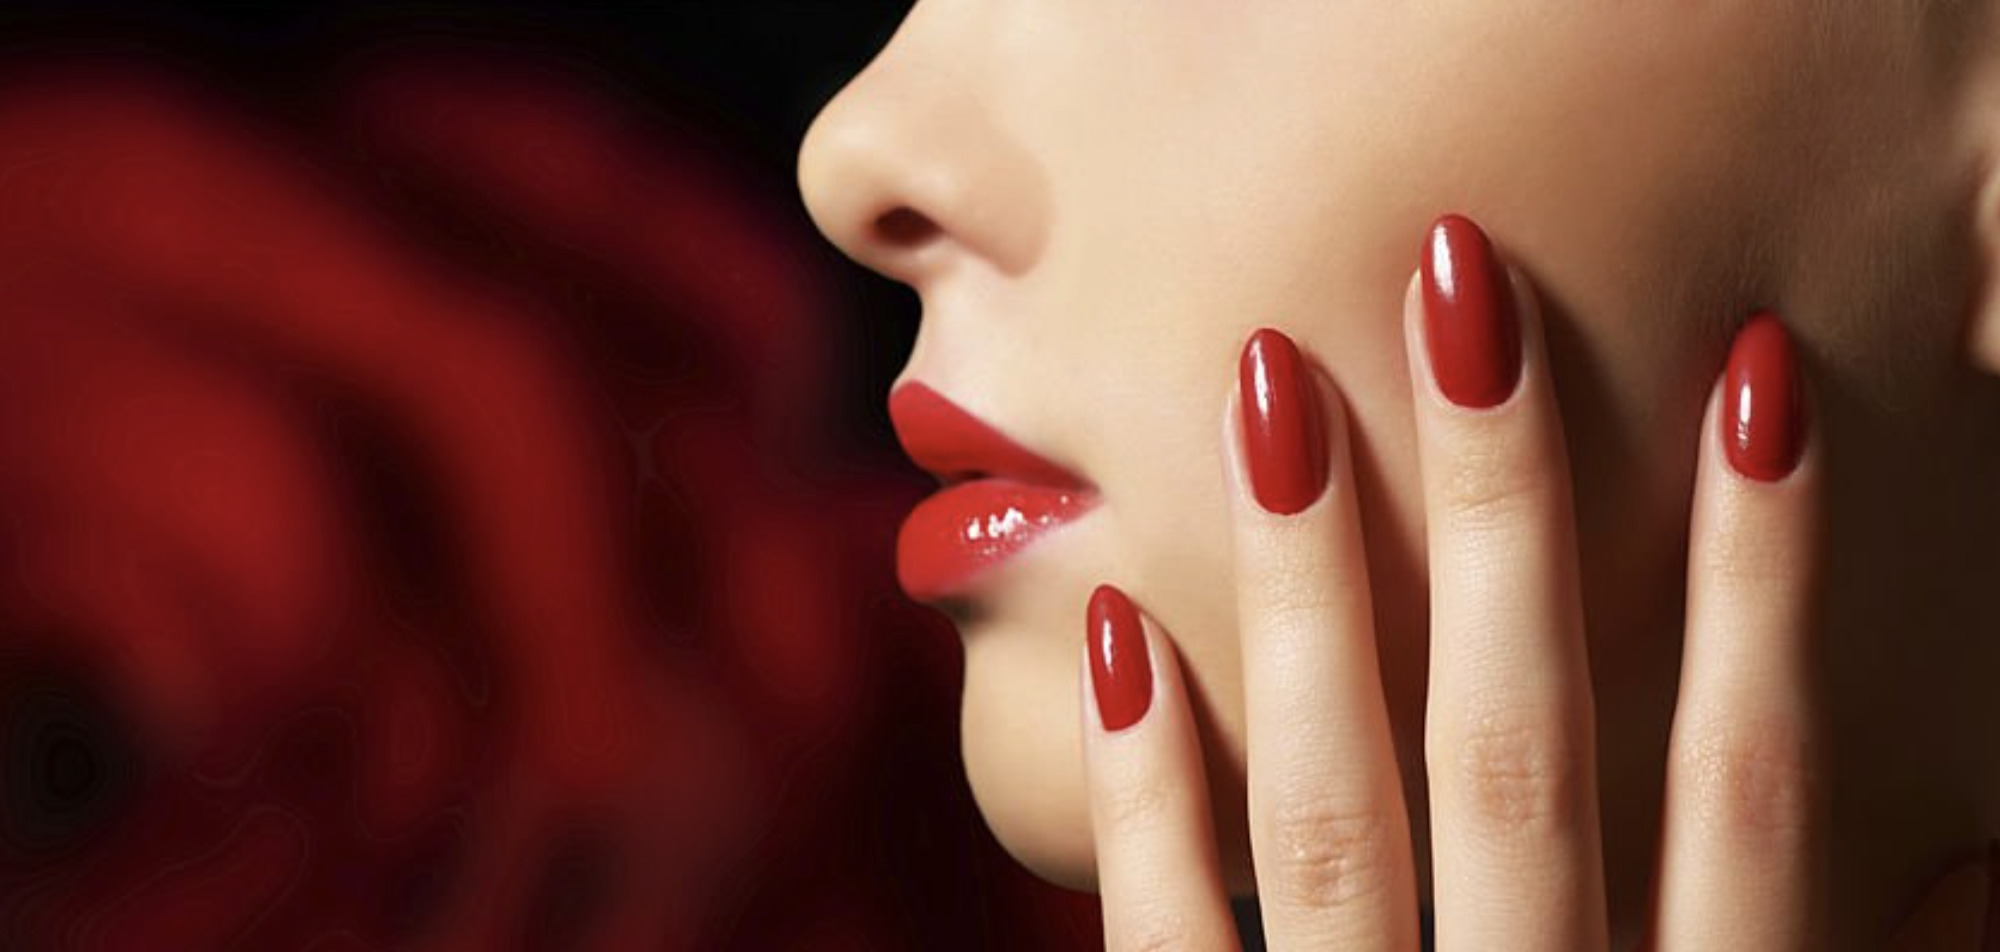 image of red nail polish on beautiful nails